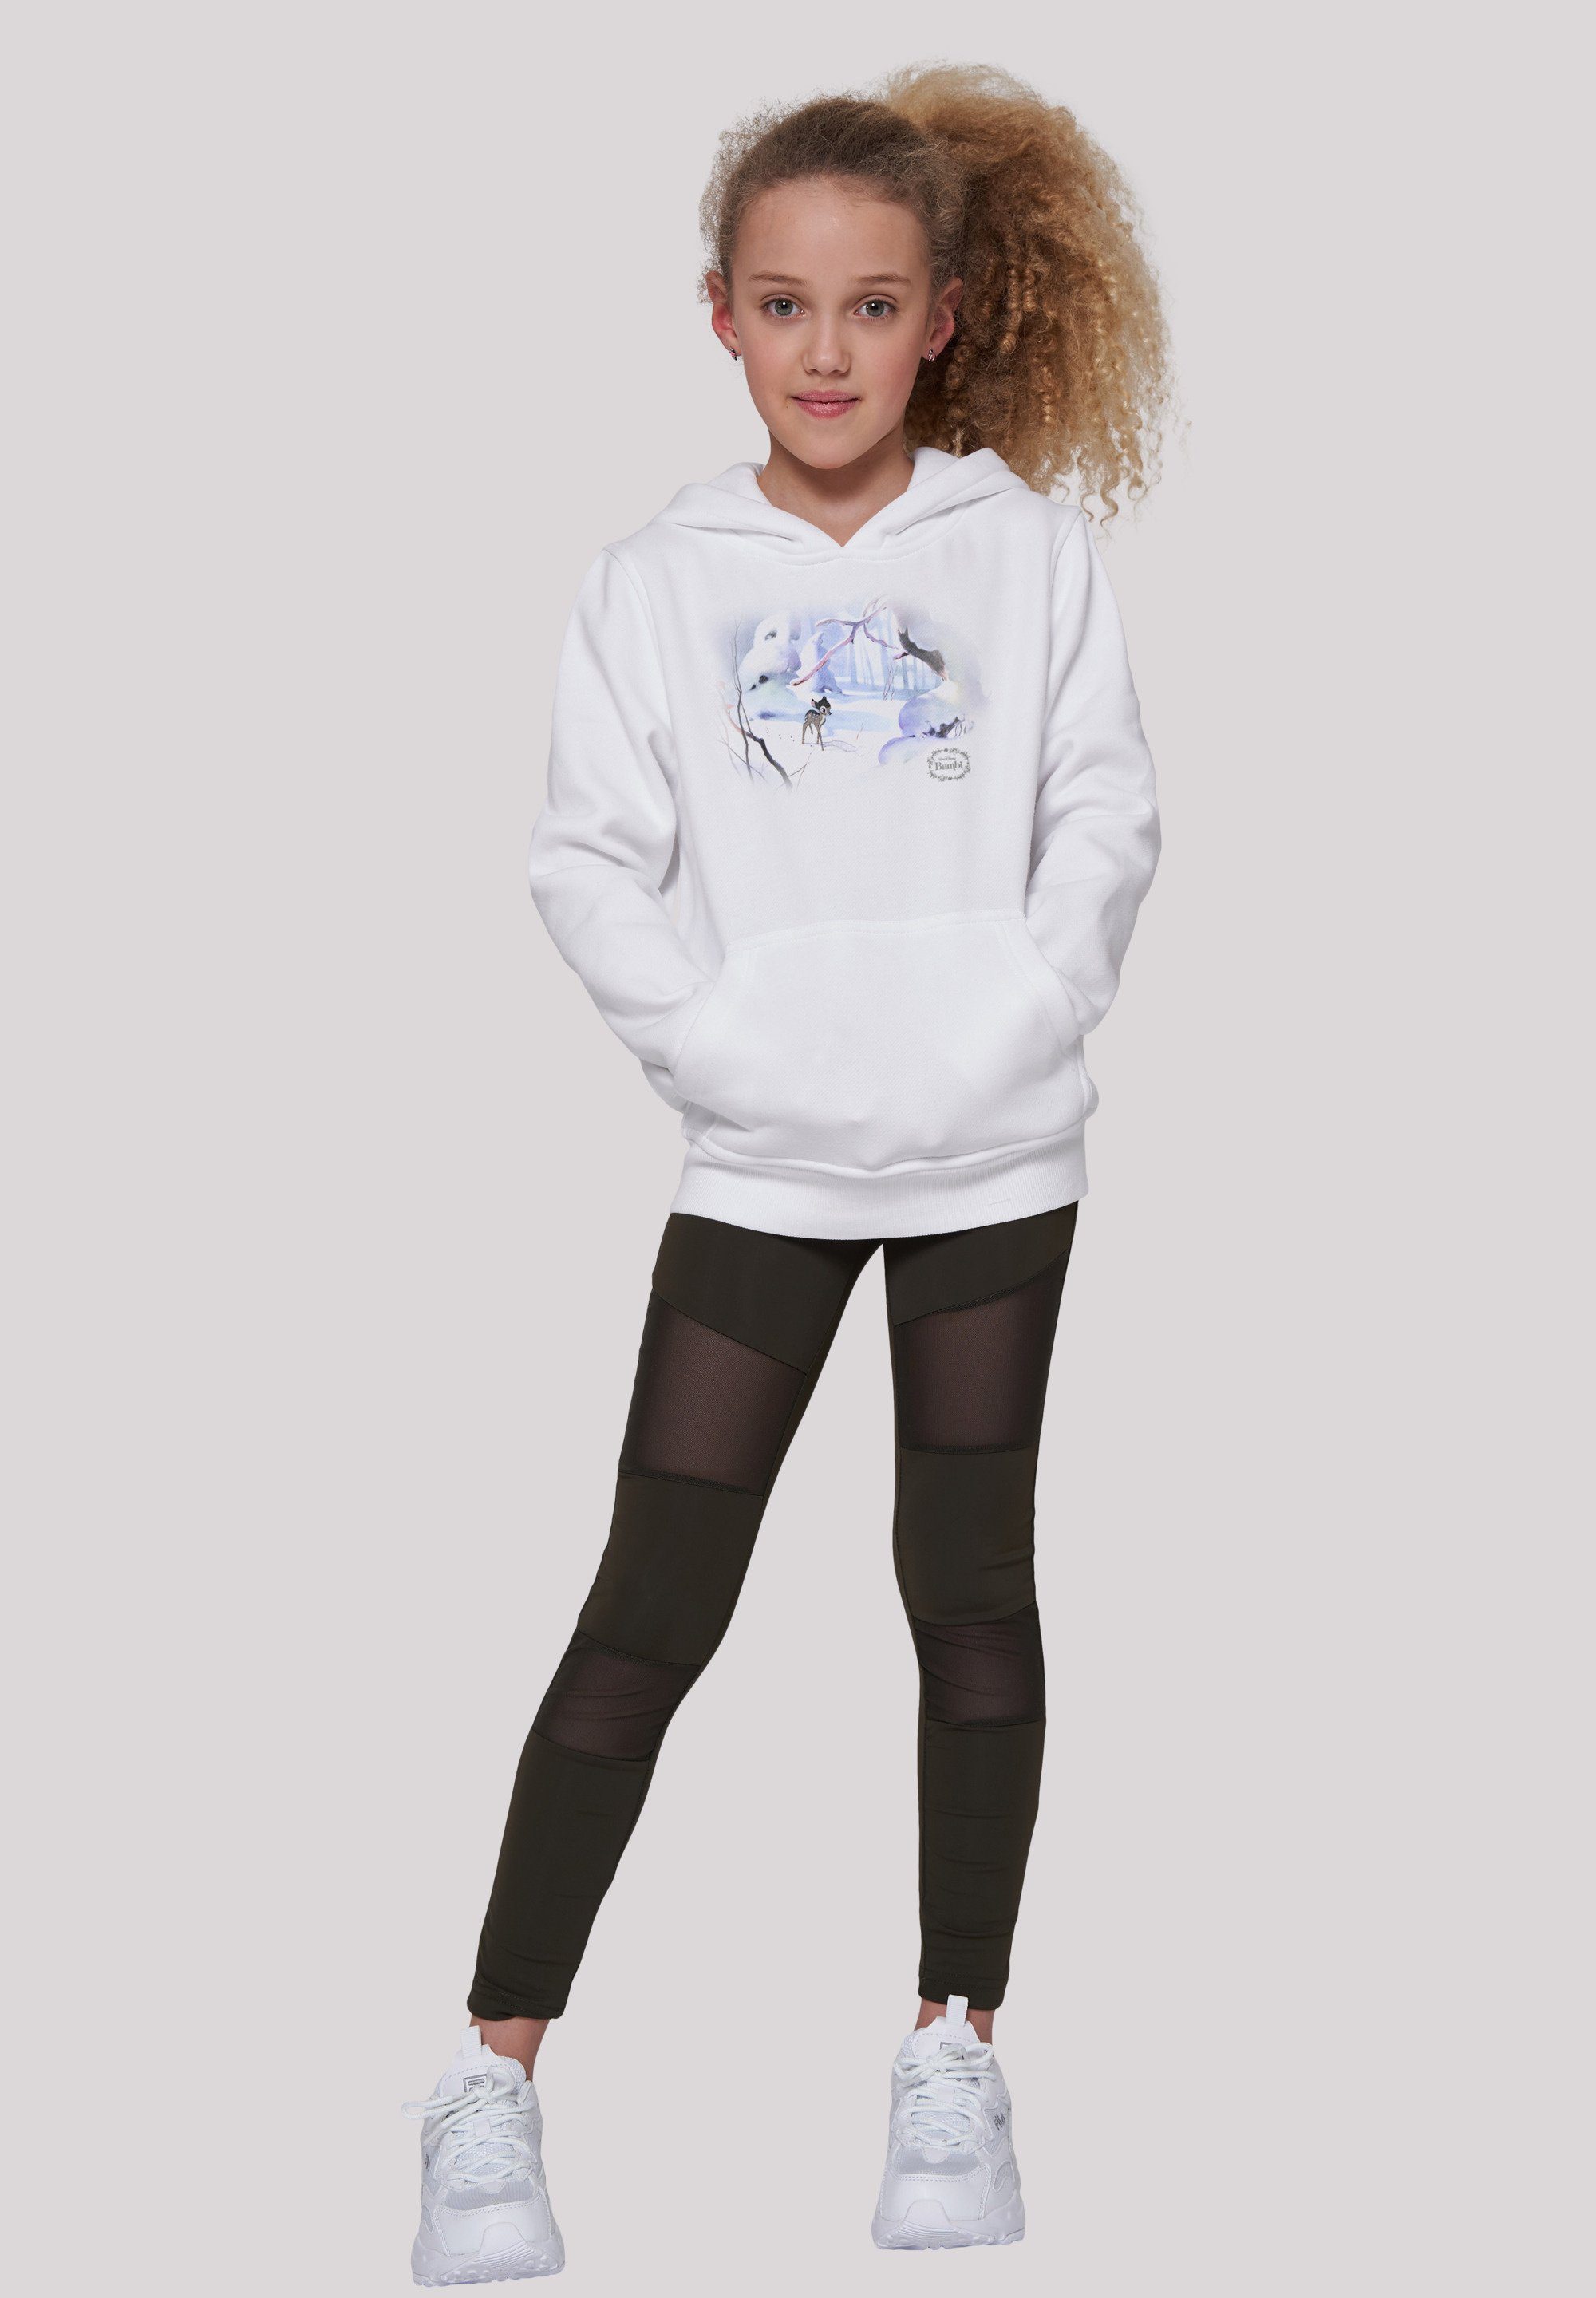 Snow F4NT4STIC Merch,Jungen,Mädchen,Bedruckt Disney Sweatshirt Kinder,Premium Bambi Unisex